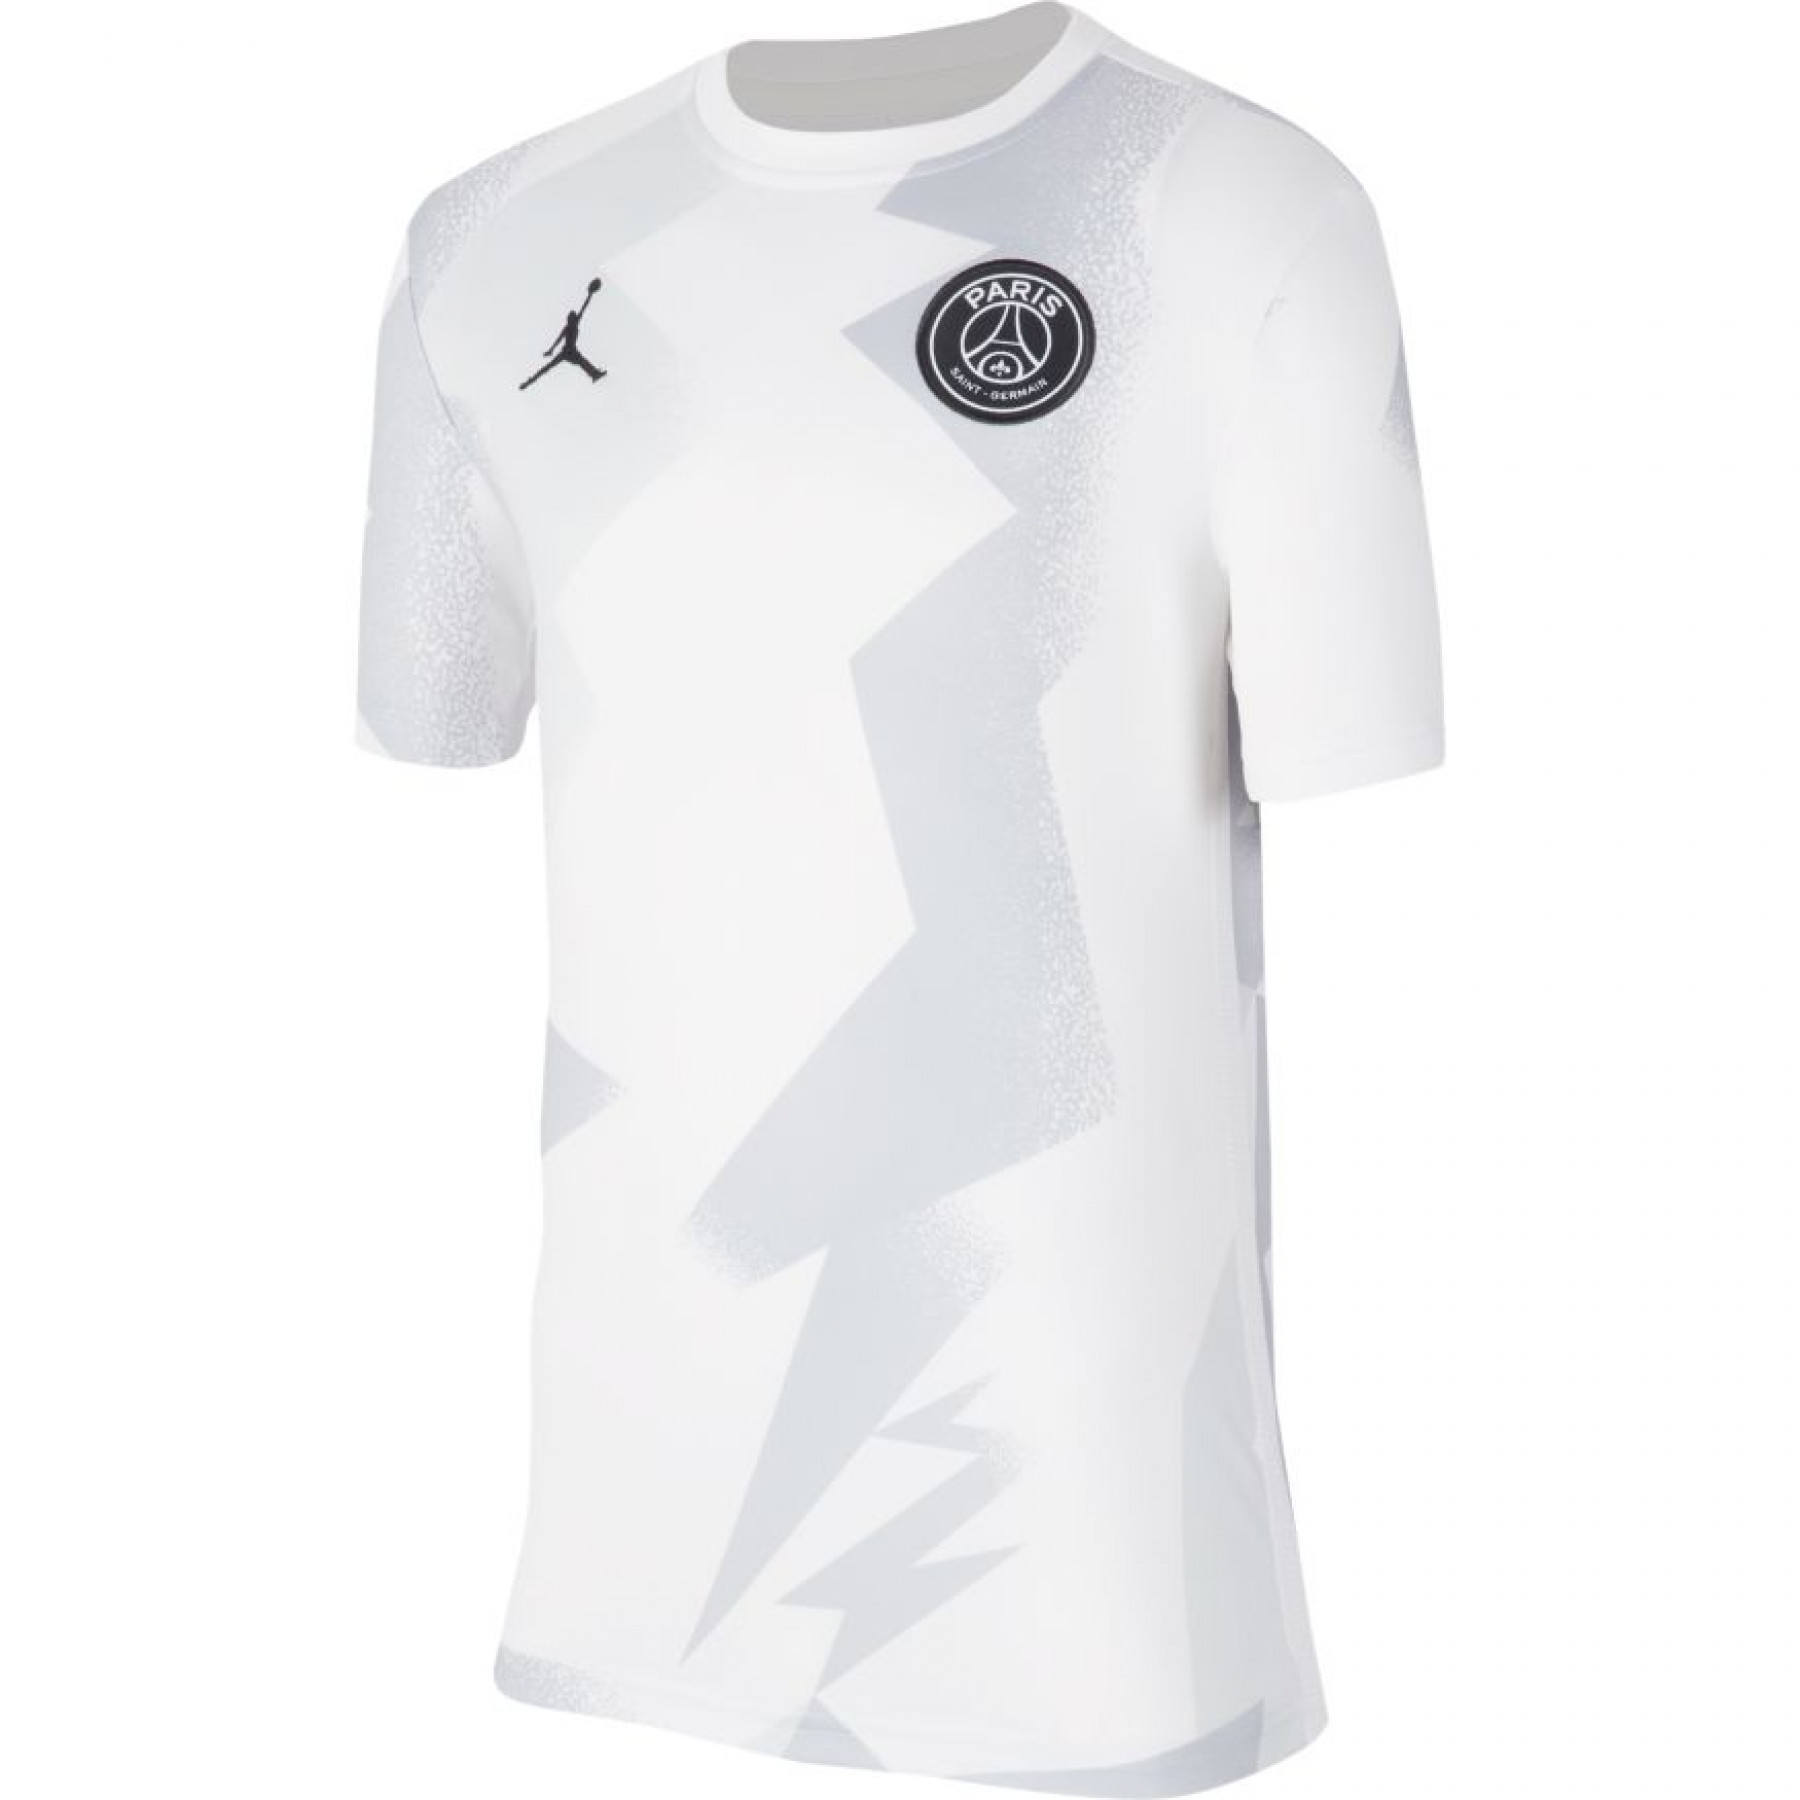 Kinder-T-shirt PSG Dri-FIT 2019/20